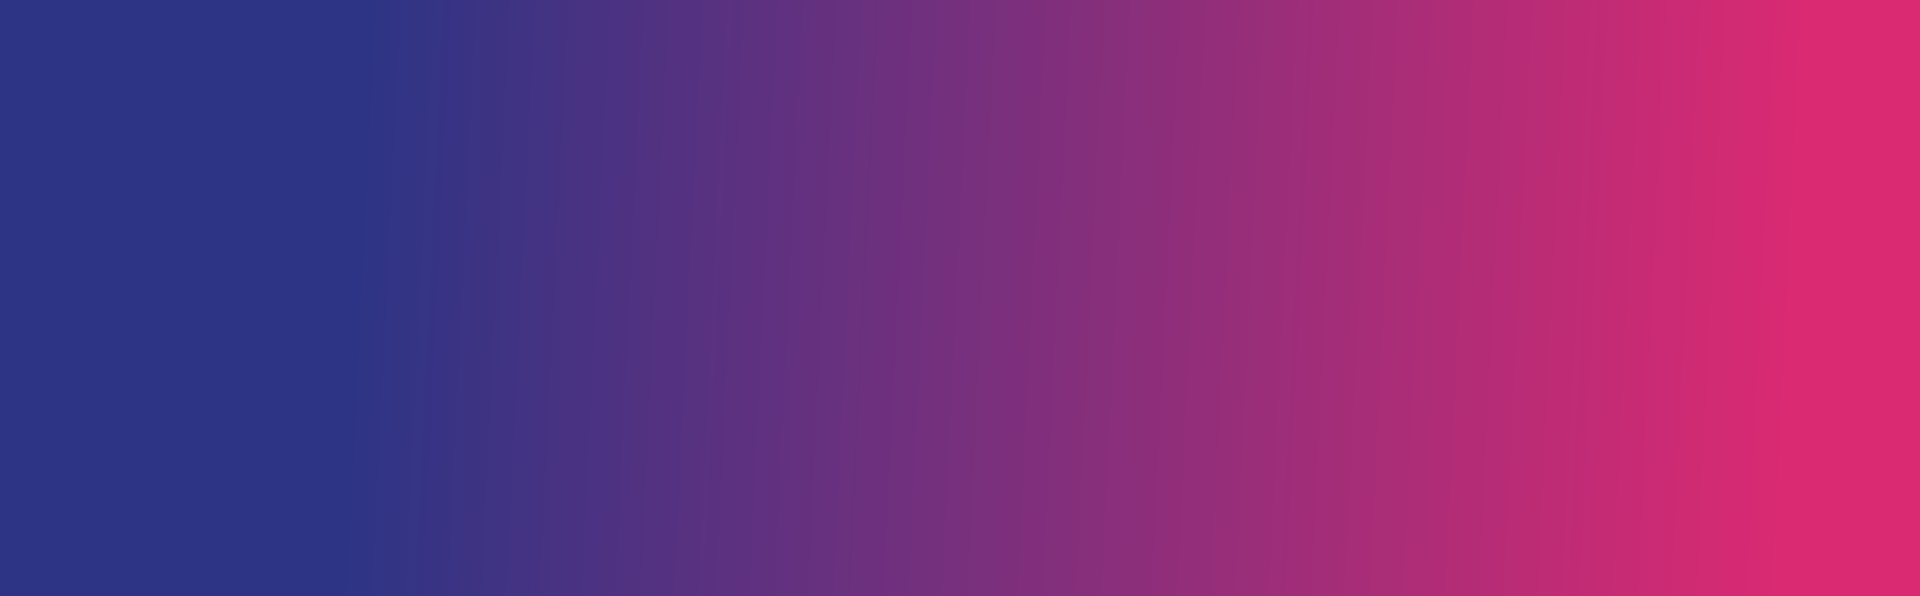 purple gradient bg